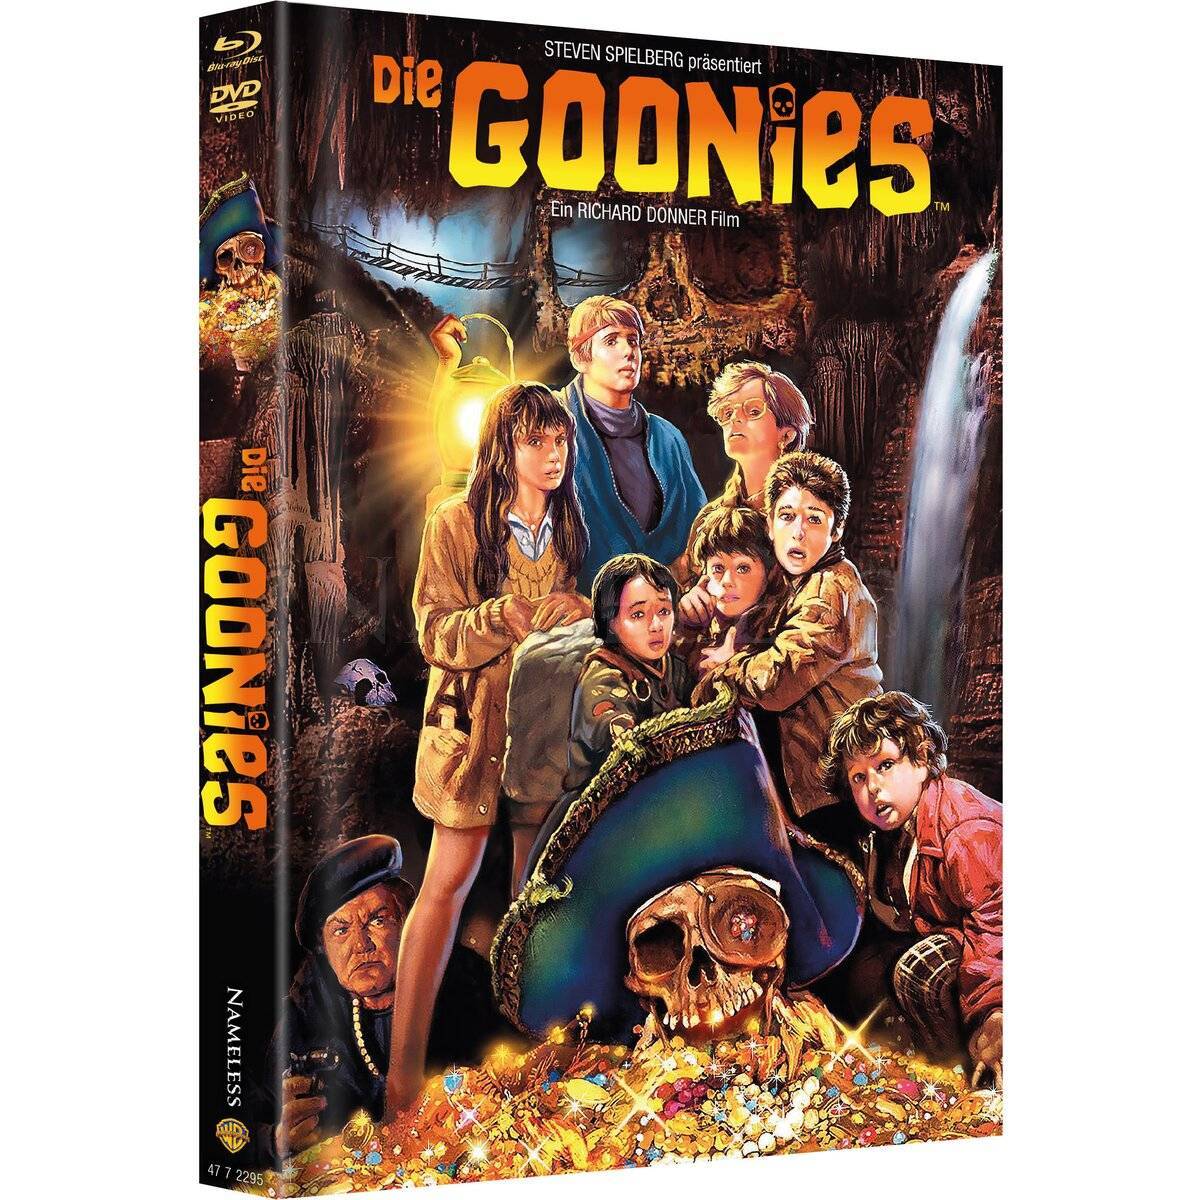 Die Goonies - Cover A - UNCUT - Premium Mediabook - Nameless Media - lim. 333 Stück - NEU/OVP 